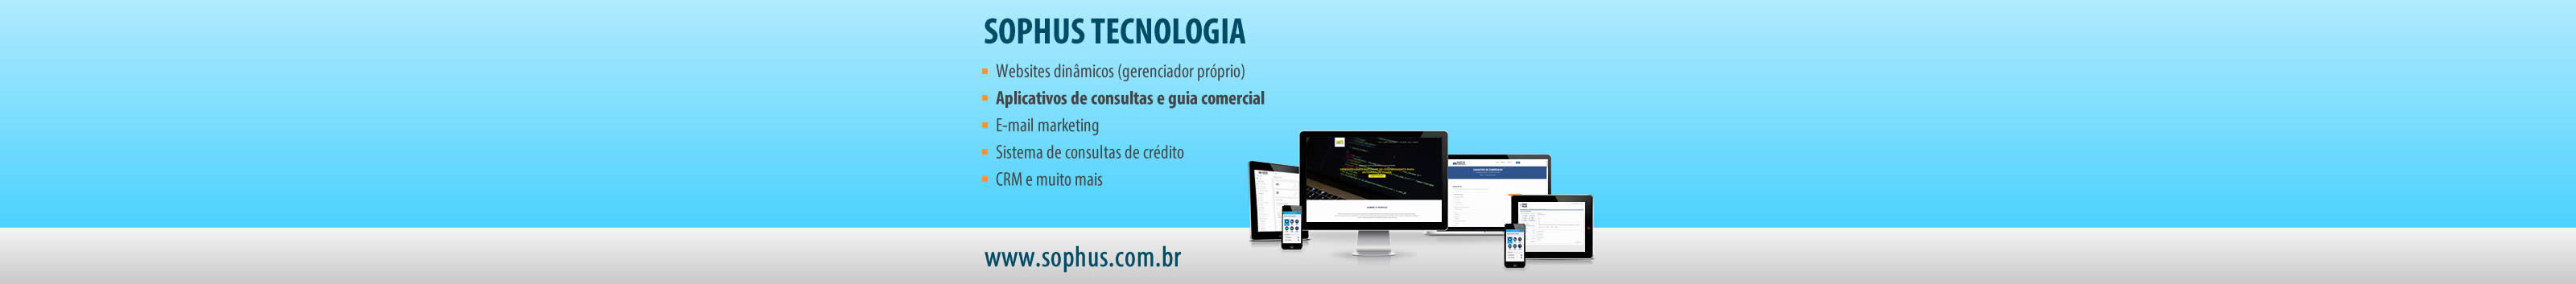 Sophus Tecnologia's profile banner